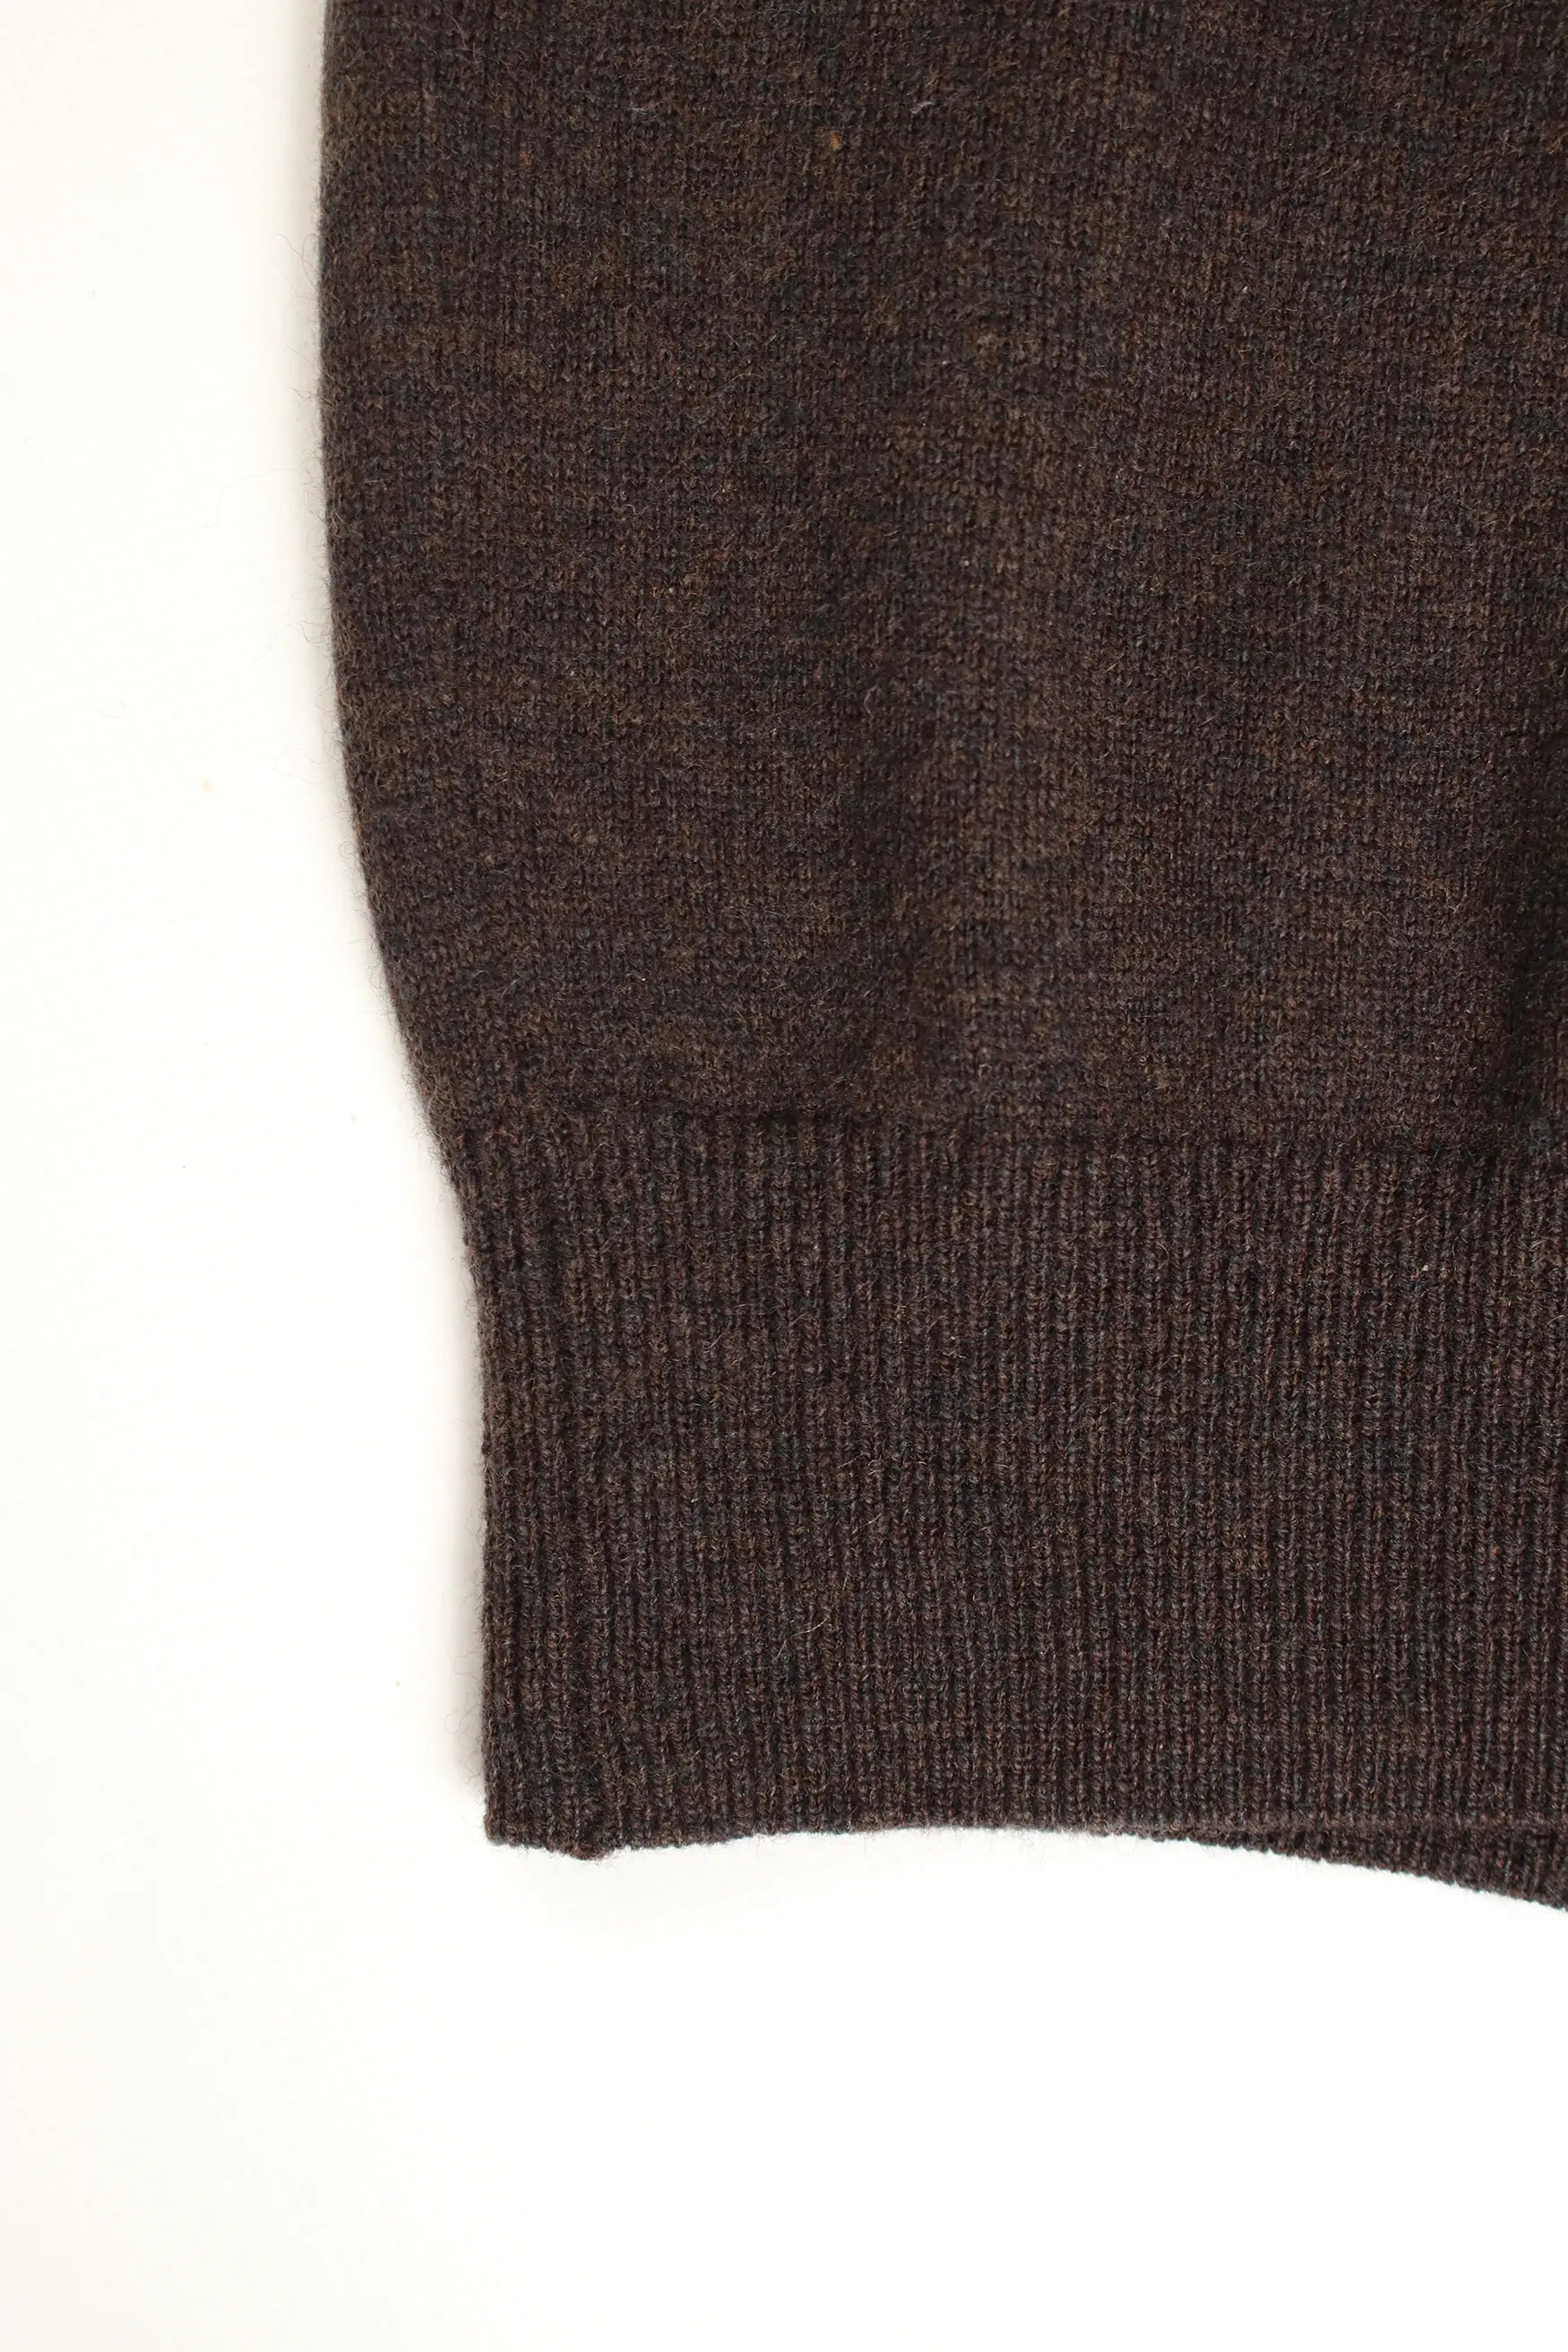 Lacoste Virgin Wool Sweater